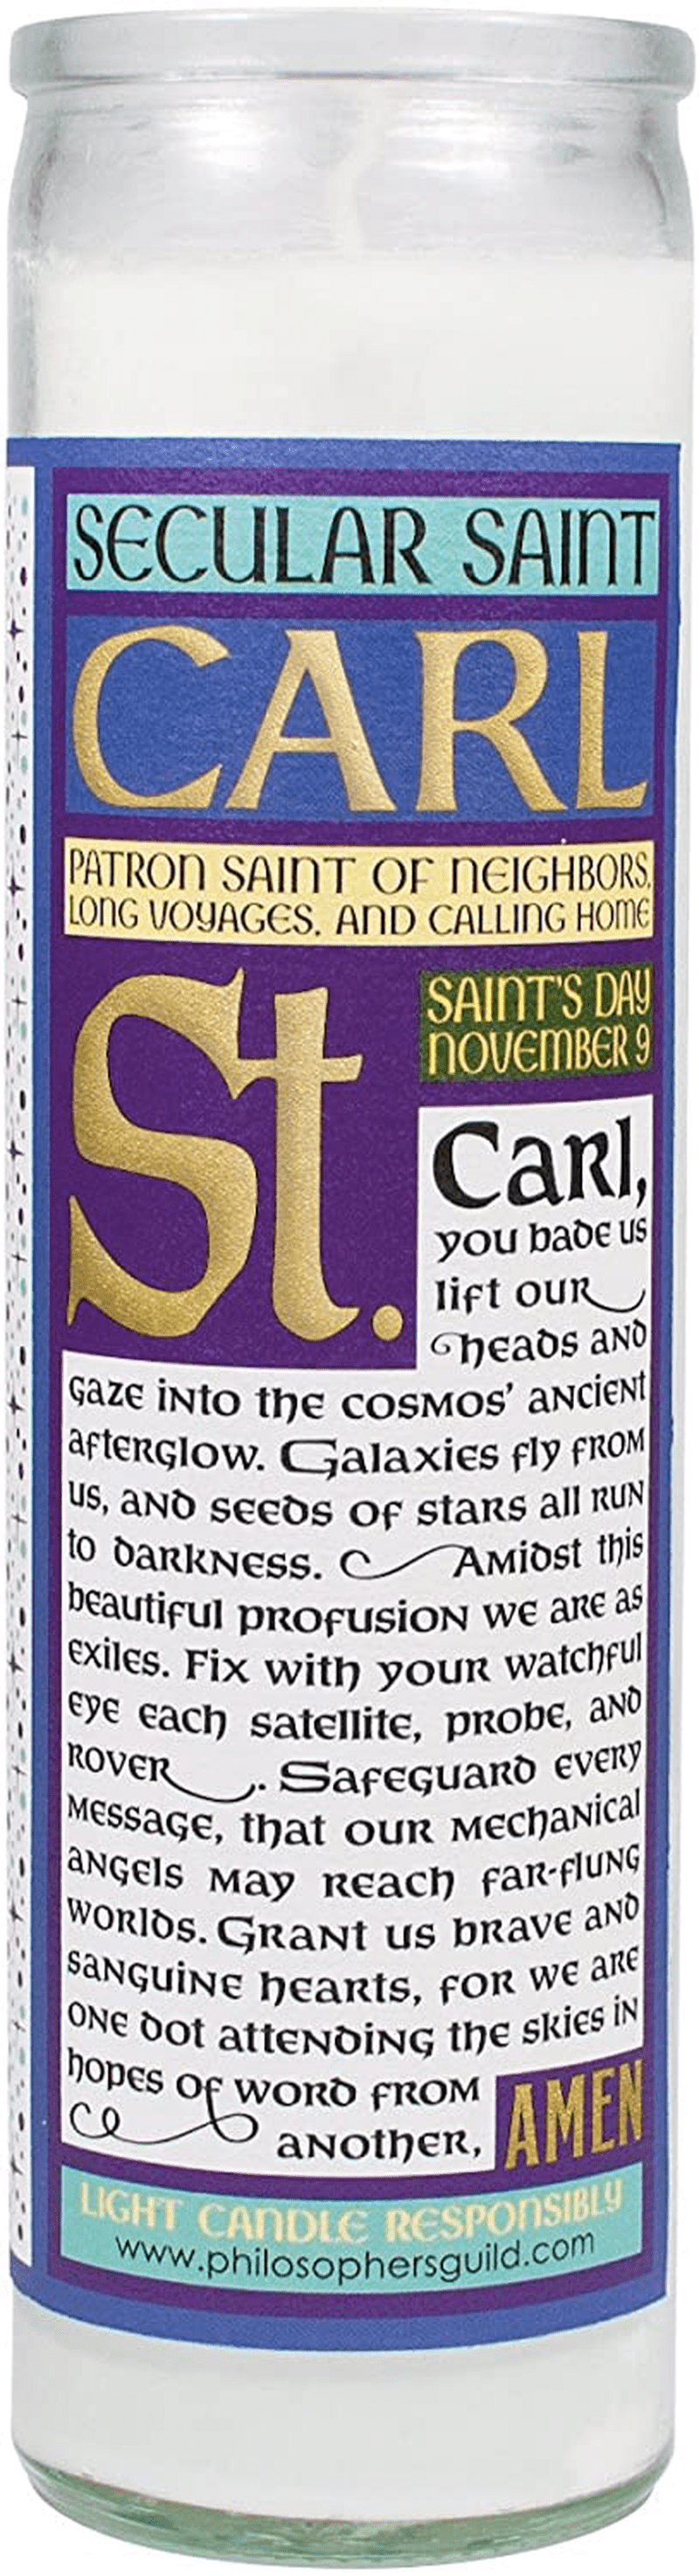 Carl Sagan Secular Saint Candle - 8.5 Inch Glass Prayer Votive - Made in The USA